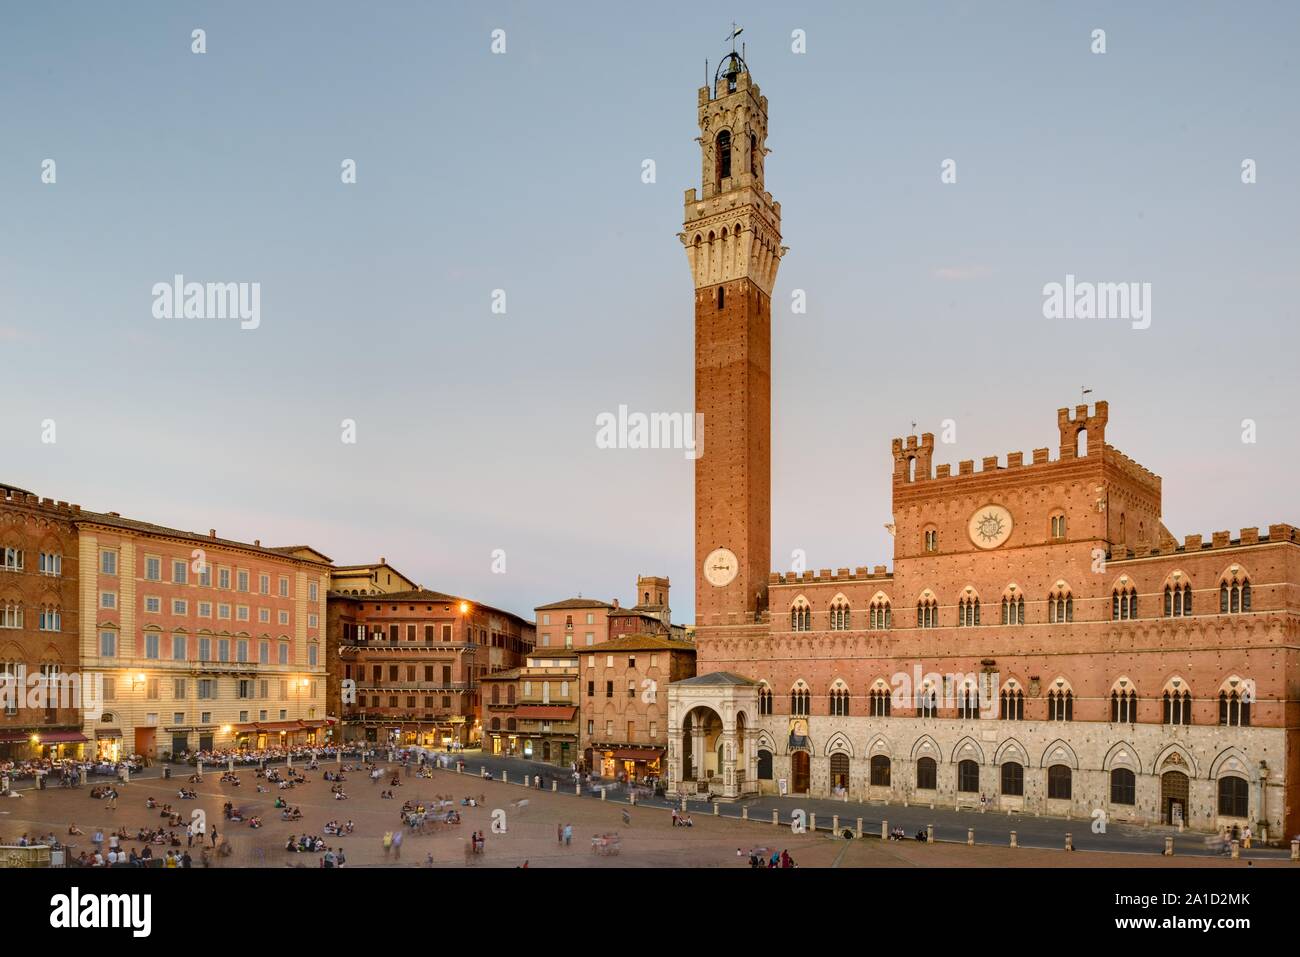 Die Piazza del Campo ist der bedeutendste Platz der toskanischen Stadt Siena, deren Zentrum bildet er. Der Platz ist bekannt durch seine beeindruckend Foto Stock